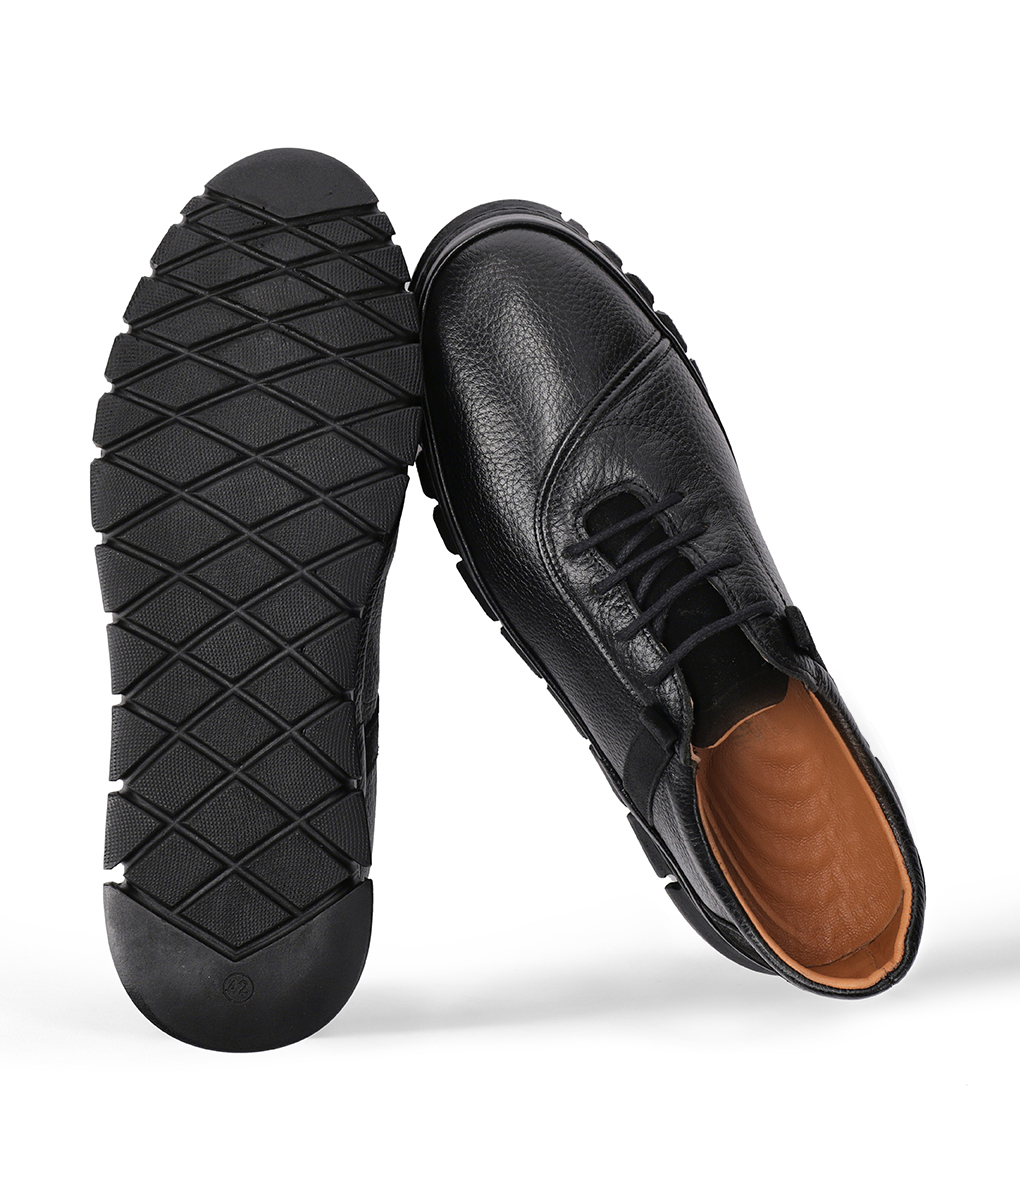 Men's Black Grainy Design Leather Shoes